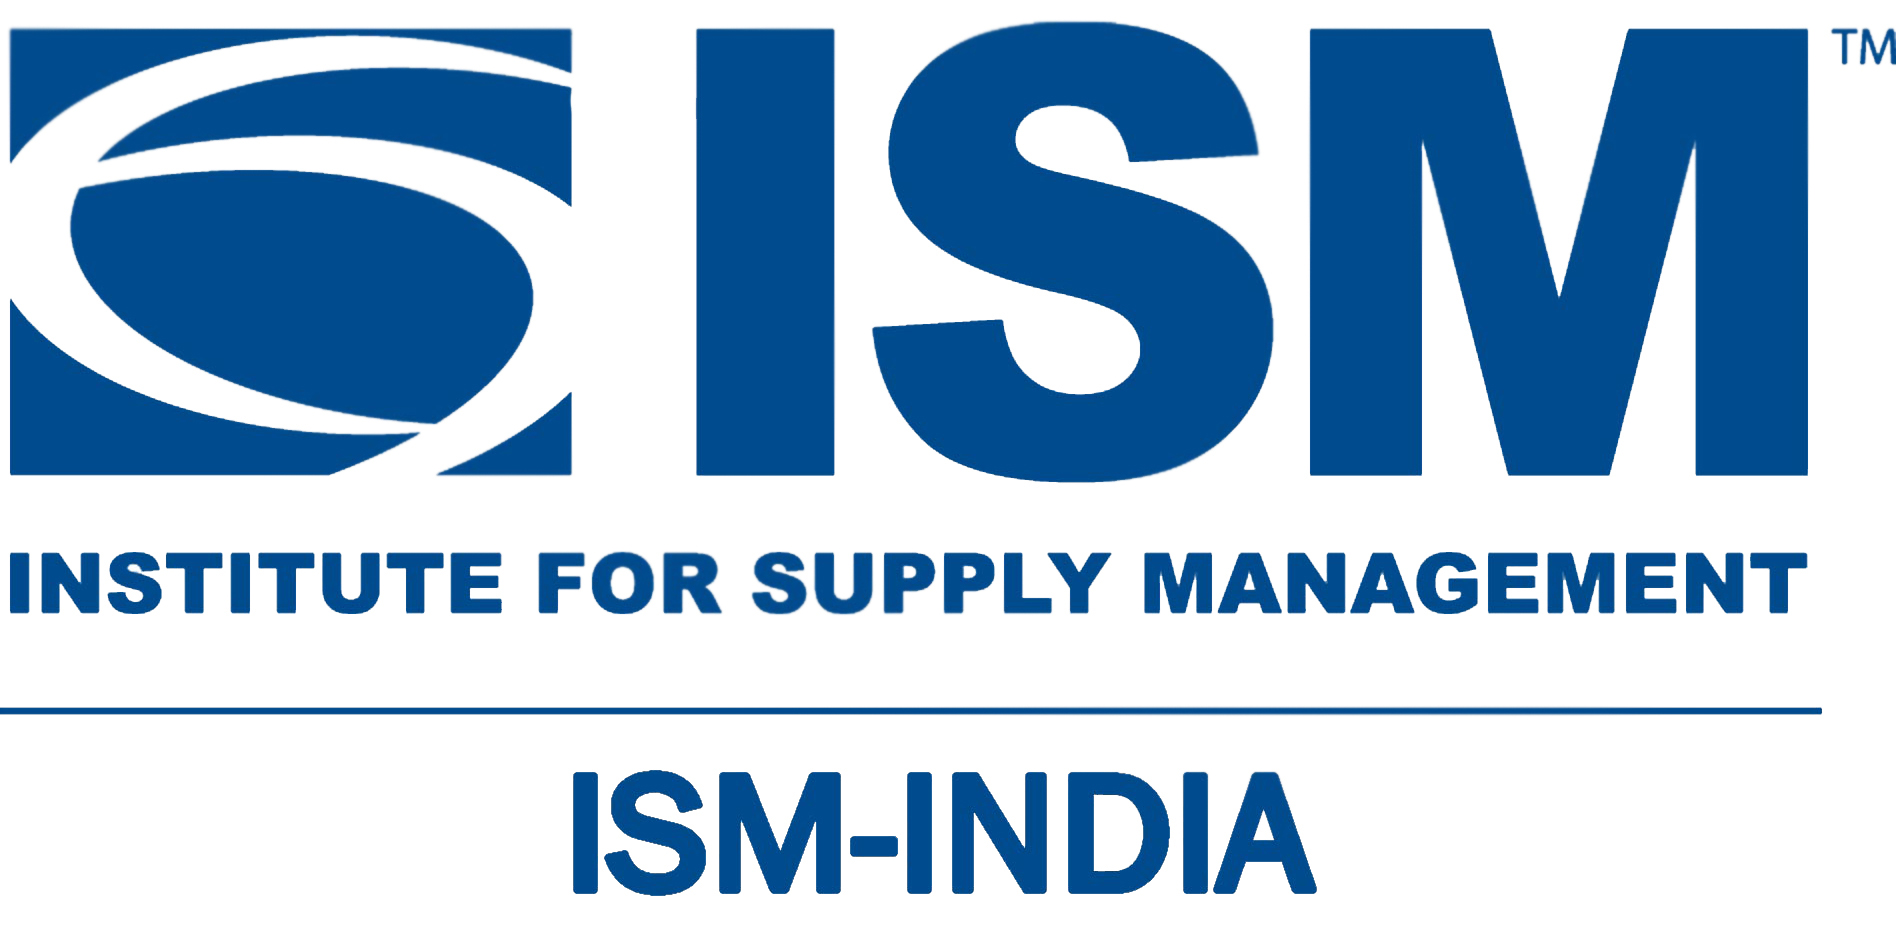 ism-india logo